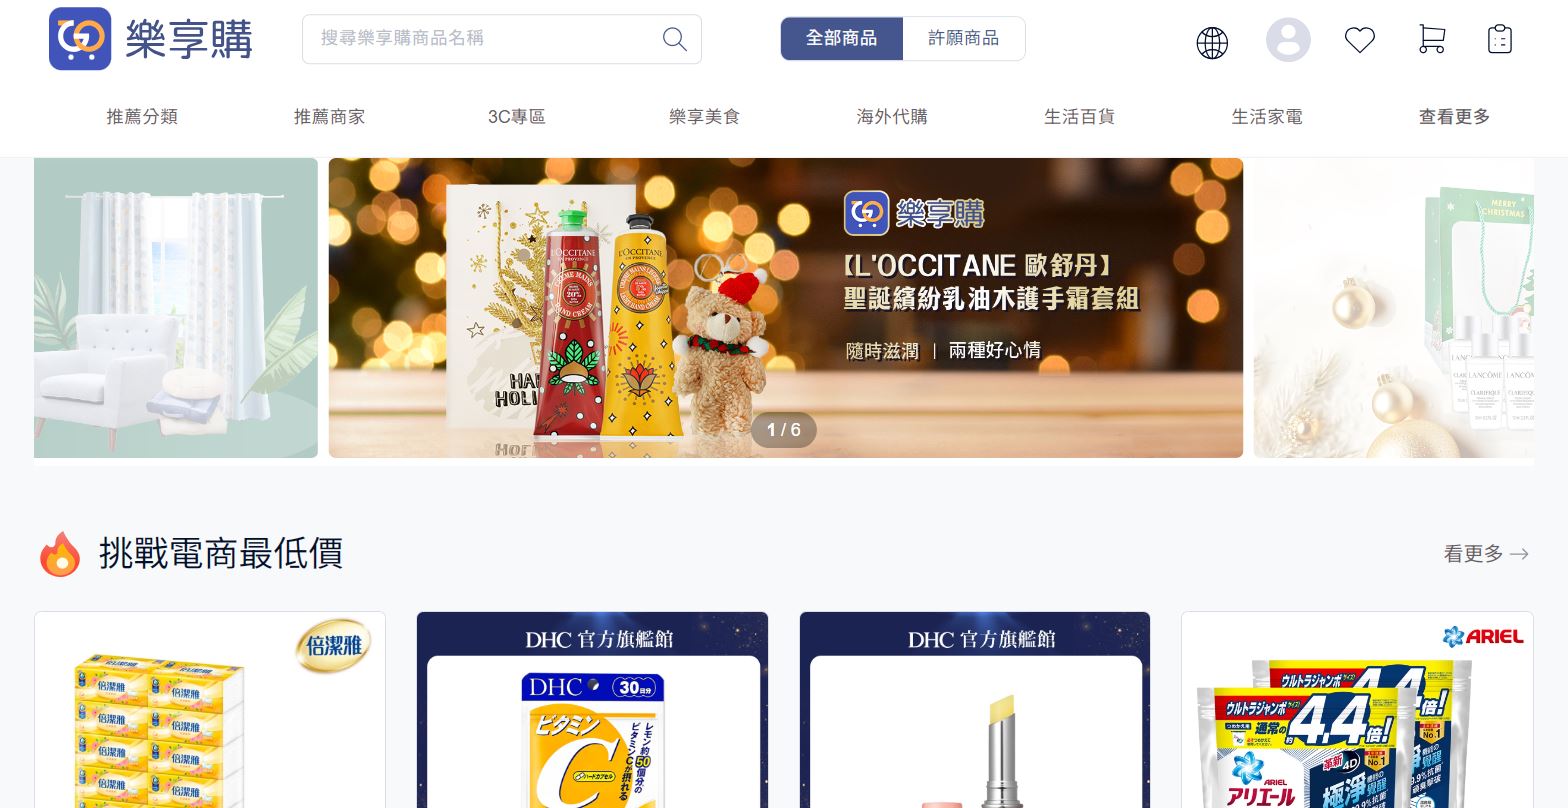 購物｜一起來網購吧 ~台灣樂享購， 讓人安心網路購物的大平台